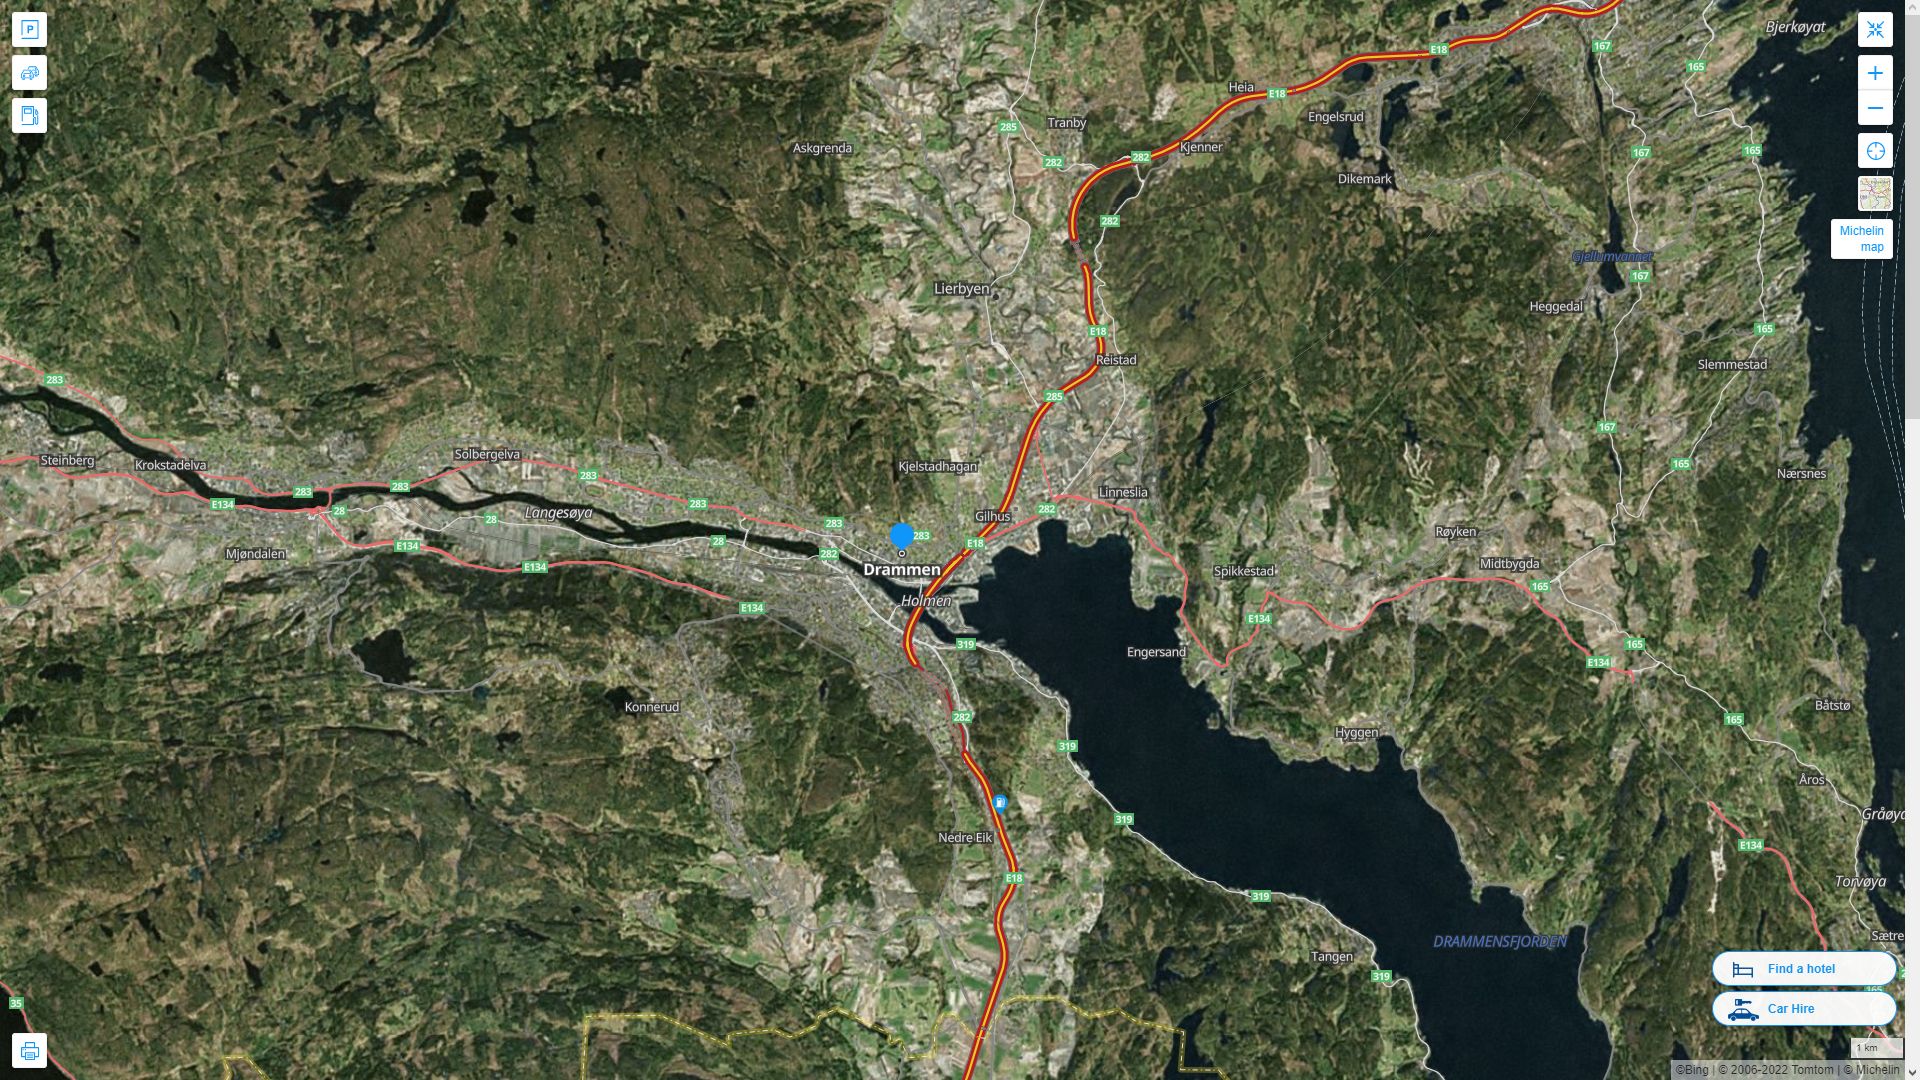 Drammen Norvege Autoroute et carte routiere avec vue satellite